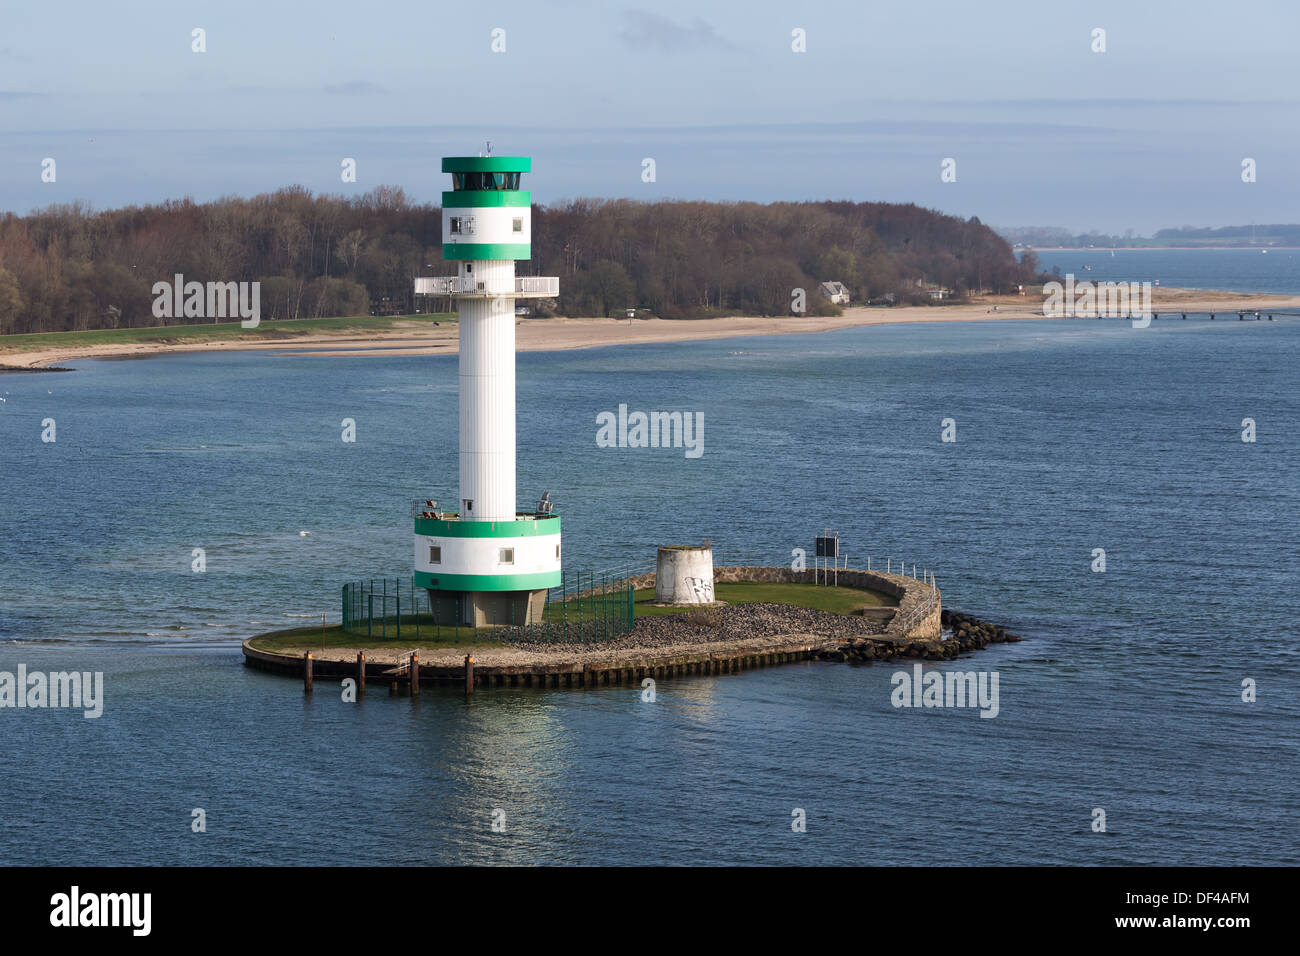 Leuchtturm auf einer kleinen Insel nahe dem Hafen von Kiel, Deutschland Stockfoto